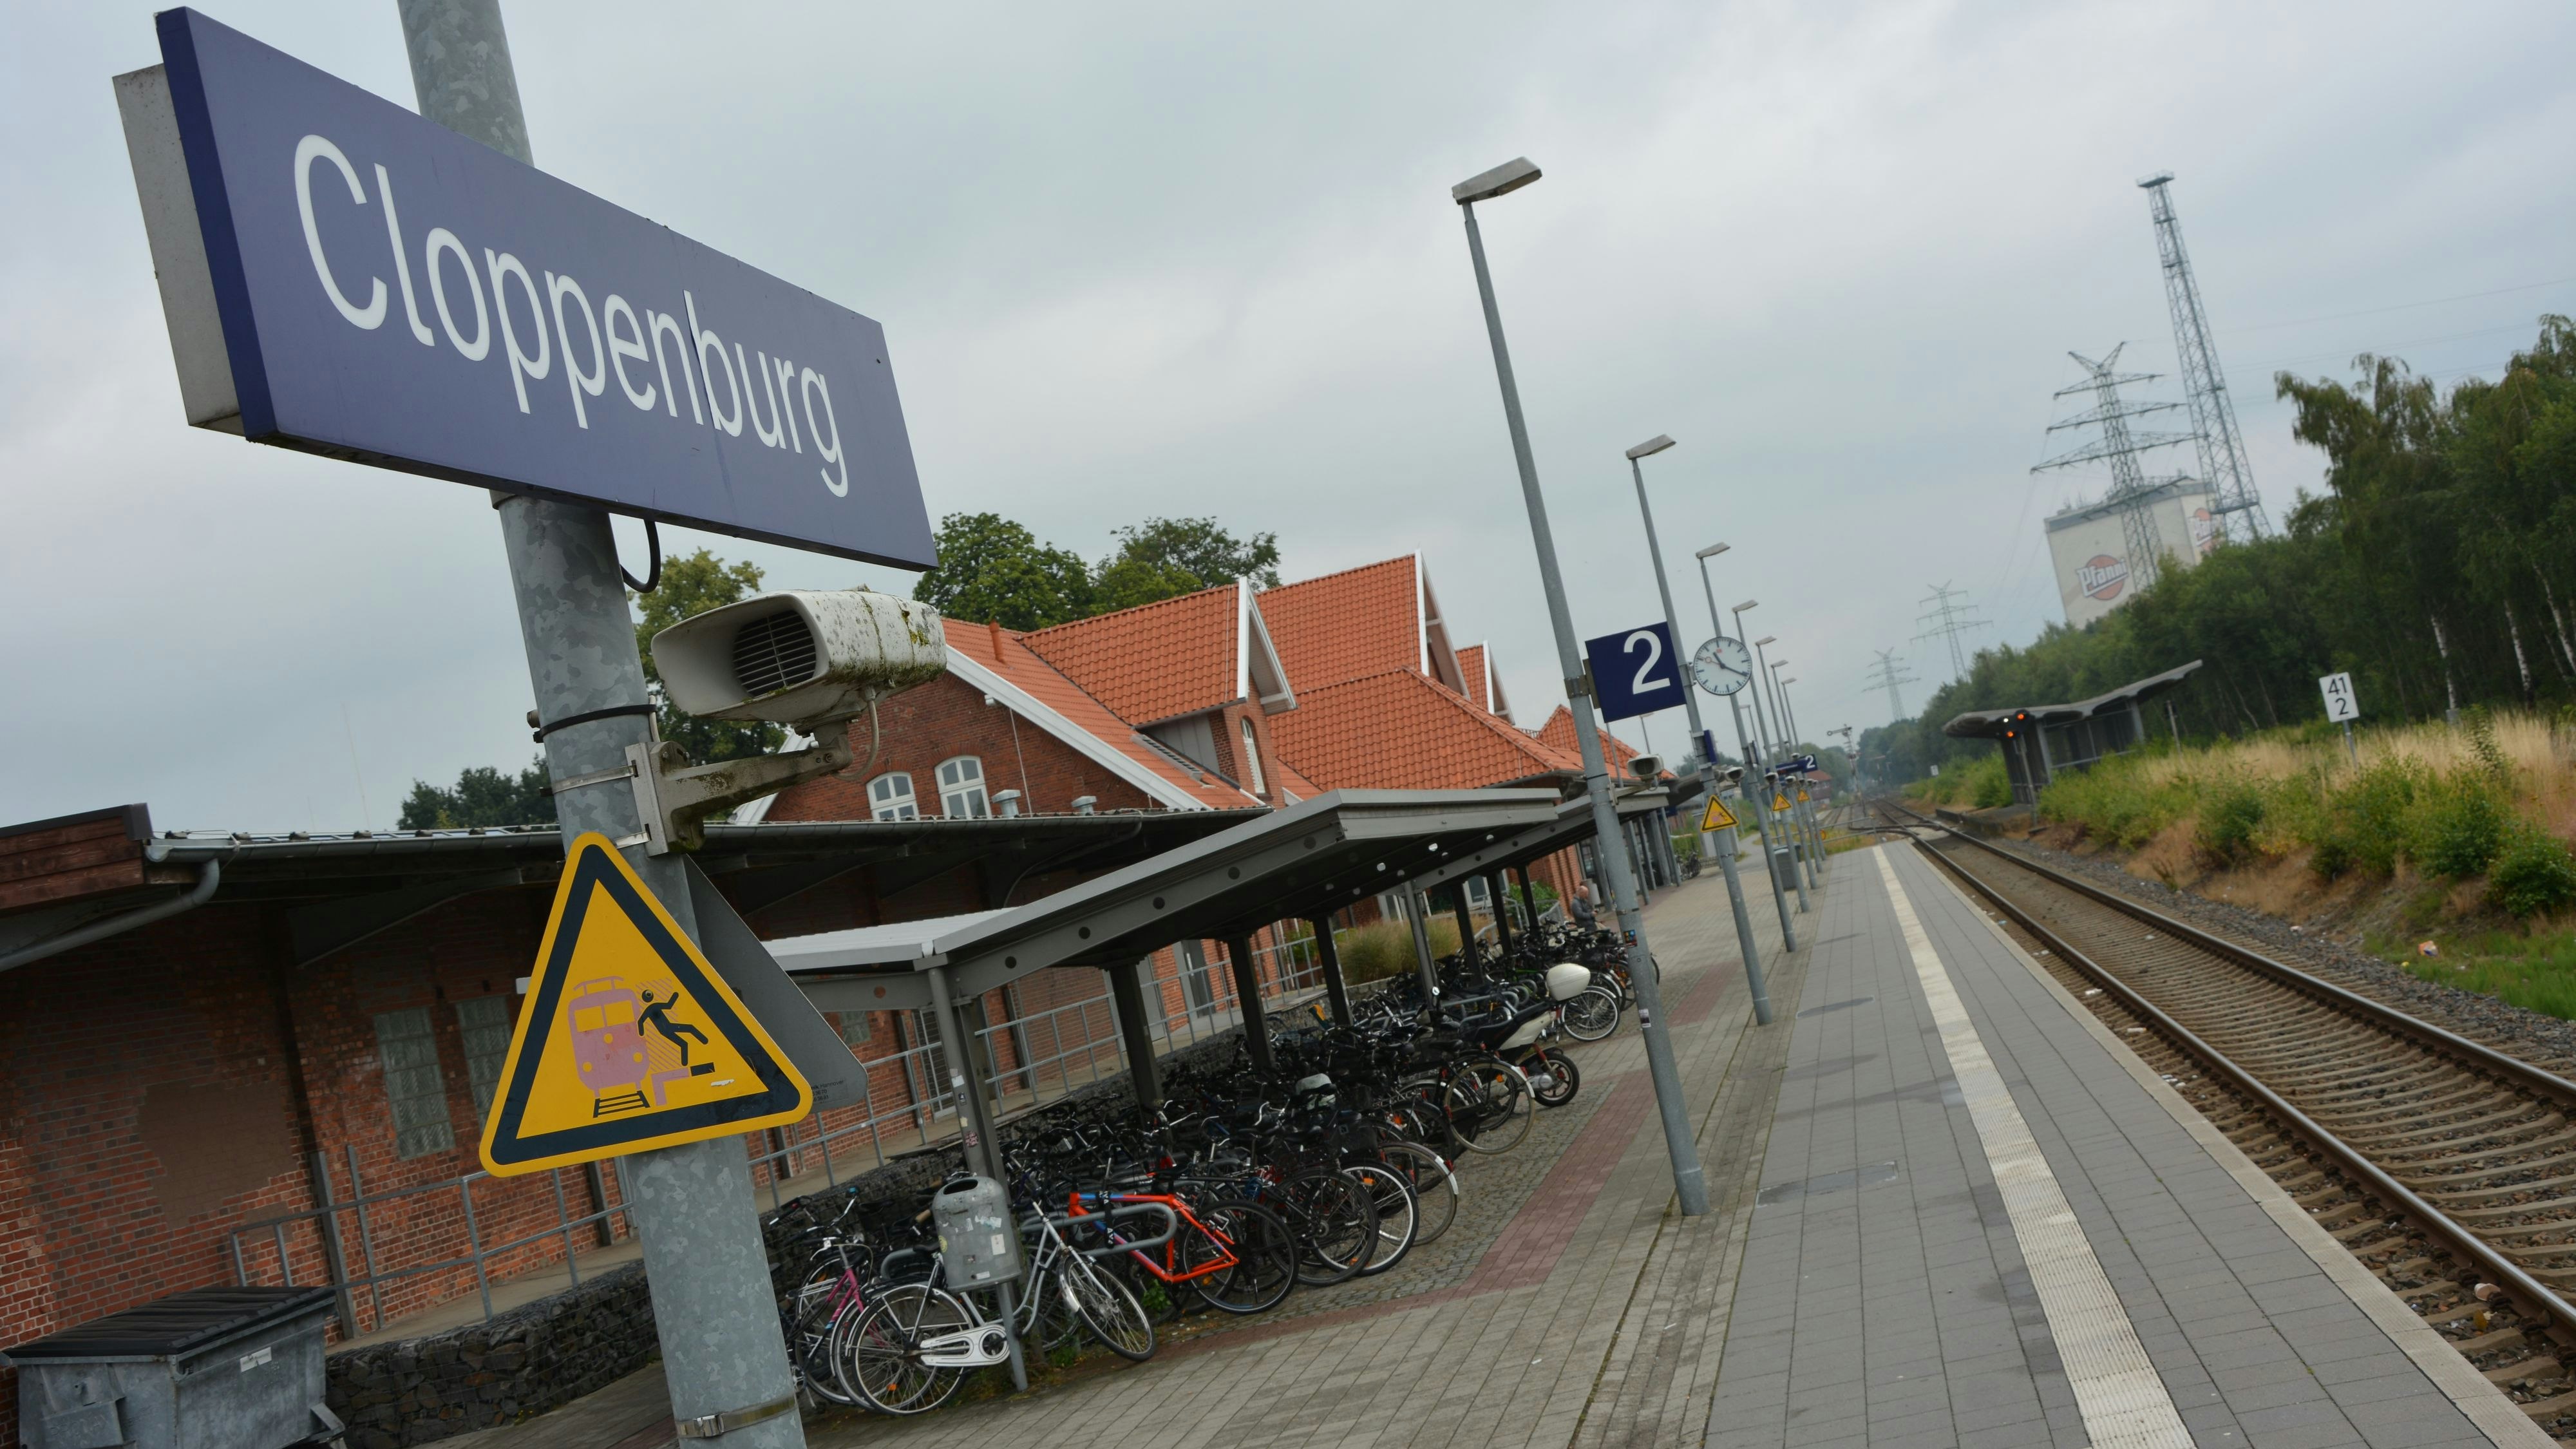 Weniger Service im Kundencenter: Bei Fernverkehrsverbindungen ist nur noch die persönliche Beratung am Cloppenburger Bahnhof möglich. Archivfoto: Hermes